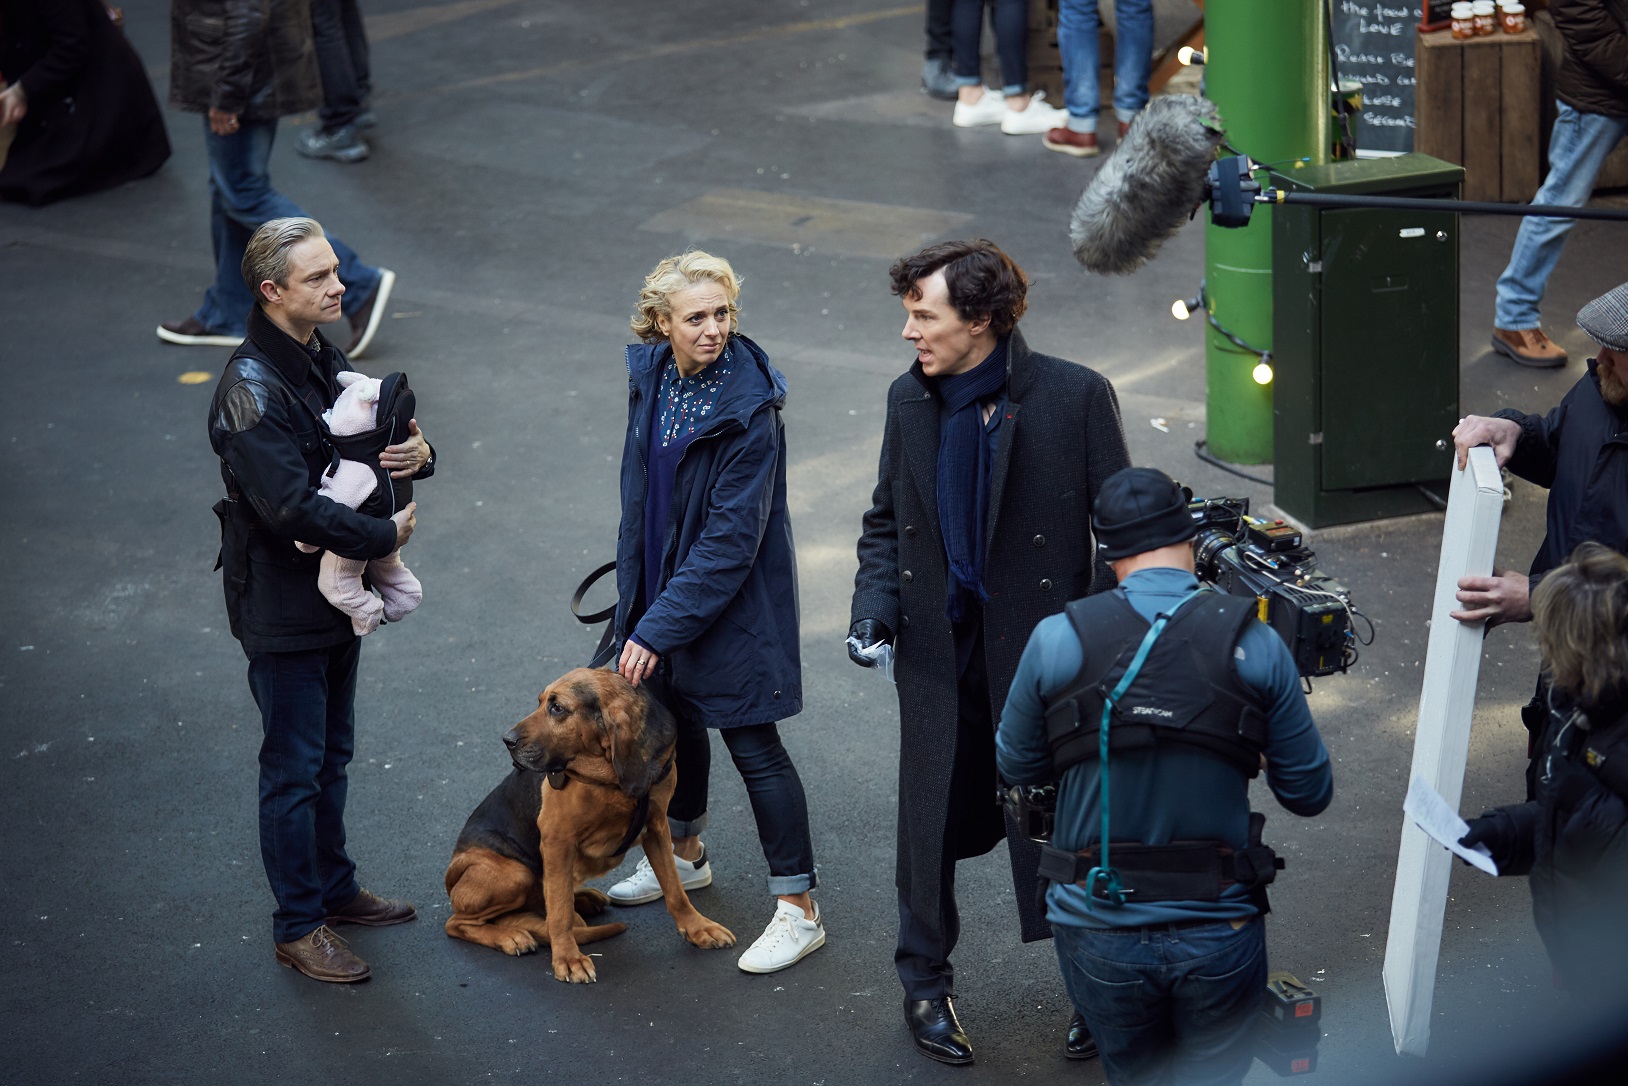 По словам исполнителя главной роли Бенедикта Камбербэтча новые серии «   Шерлока   »Будут очень драматическими: в них будут смех, слезы, неожиданные повороты, сюрпризы и невероятные расследования